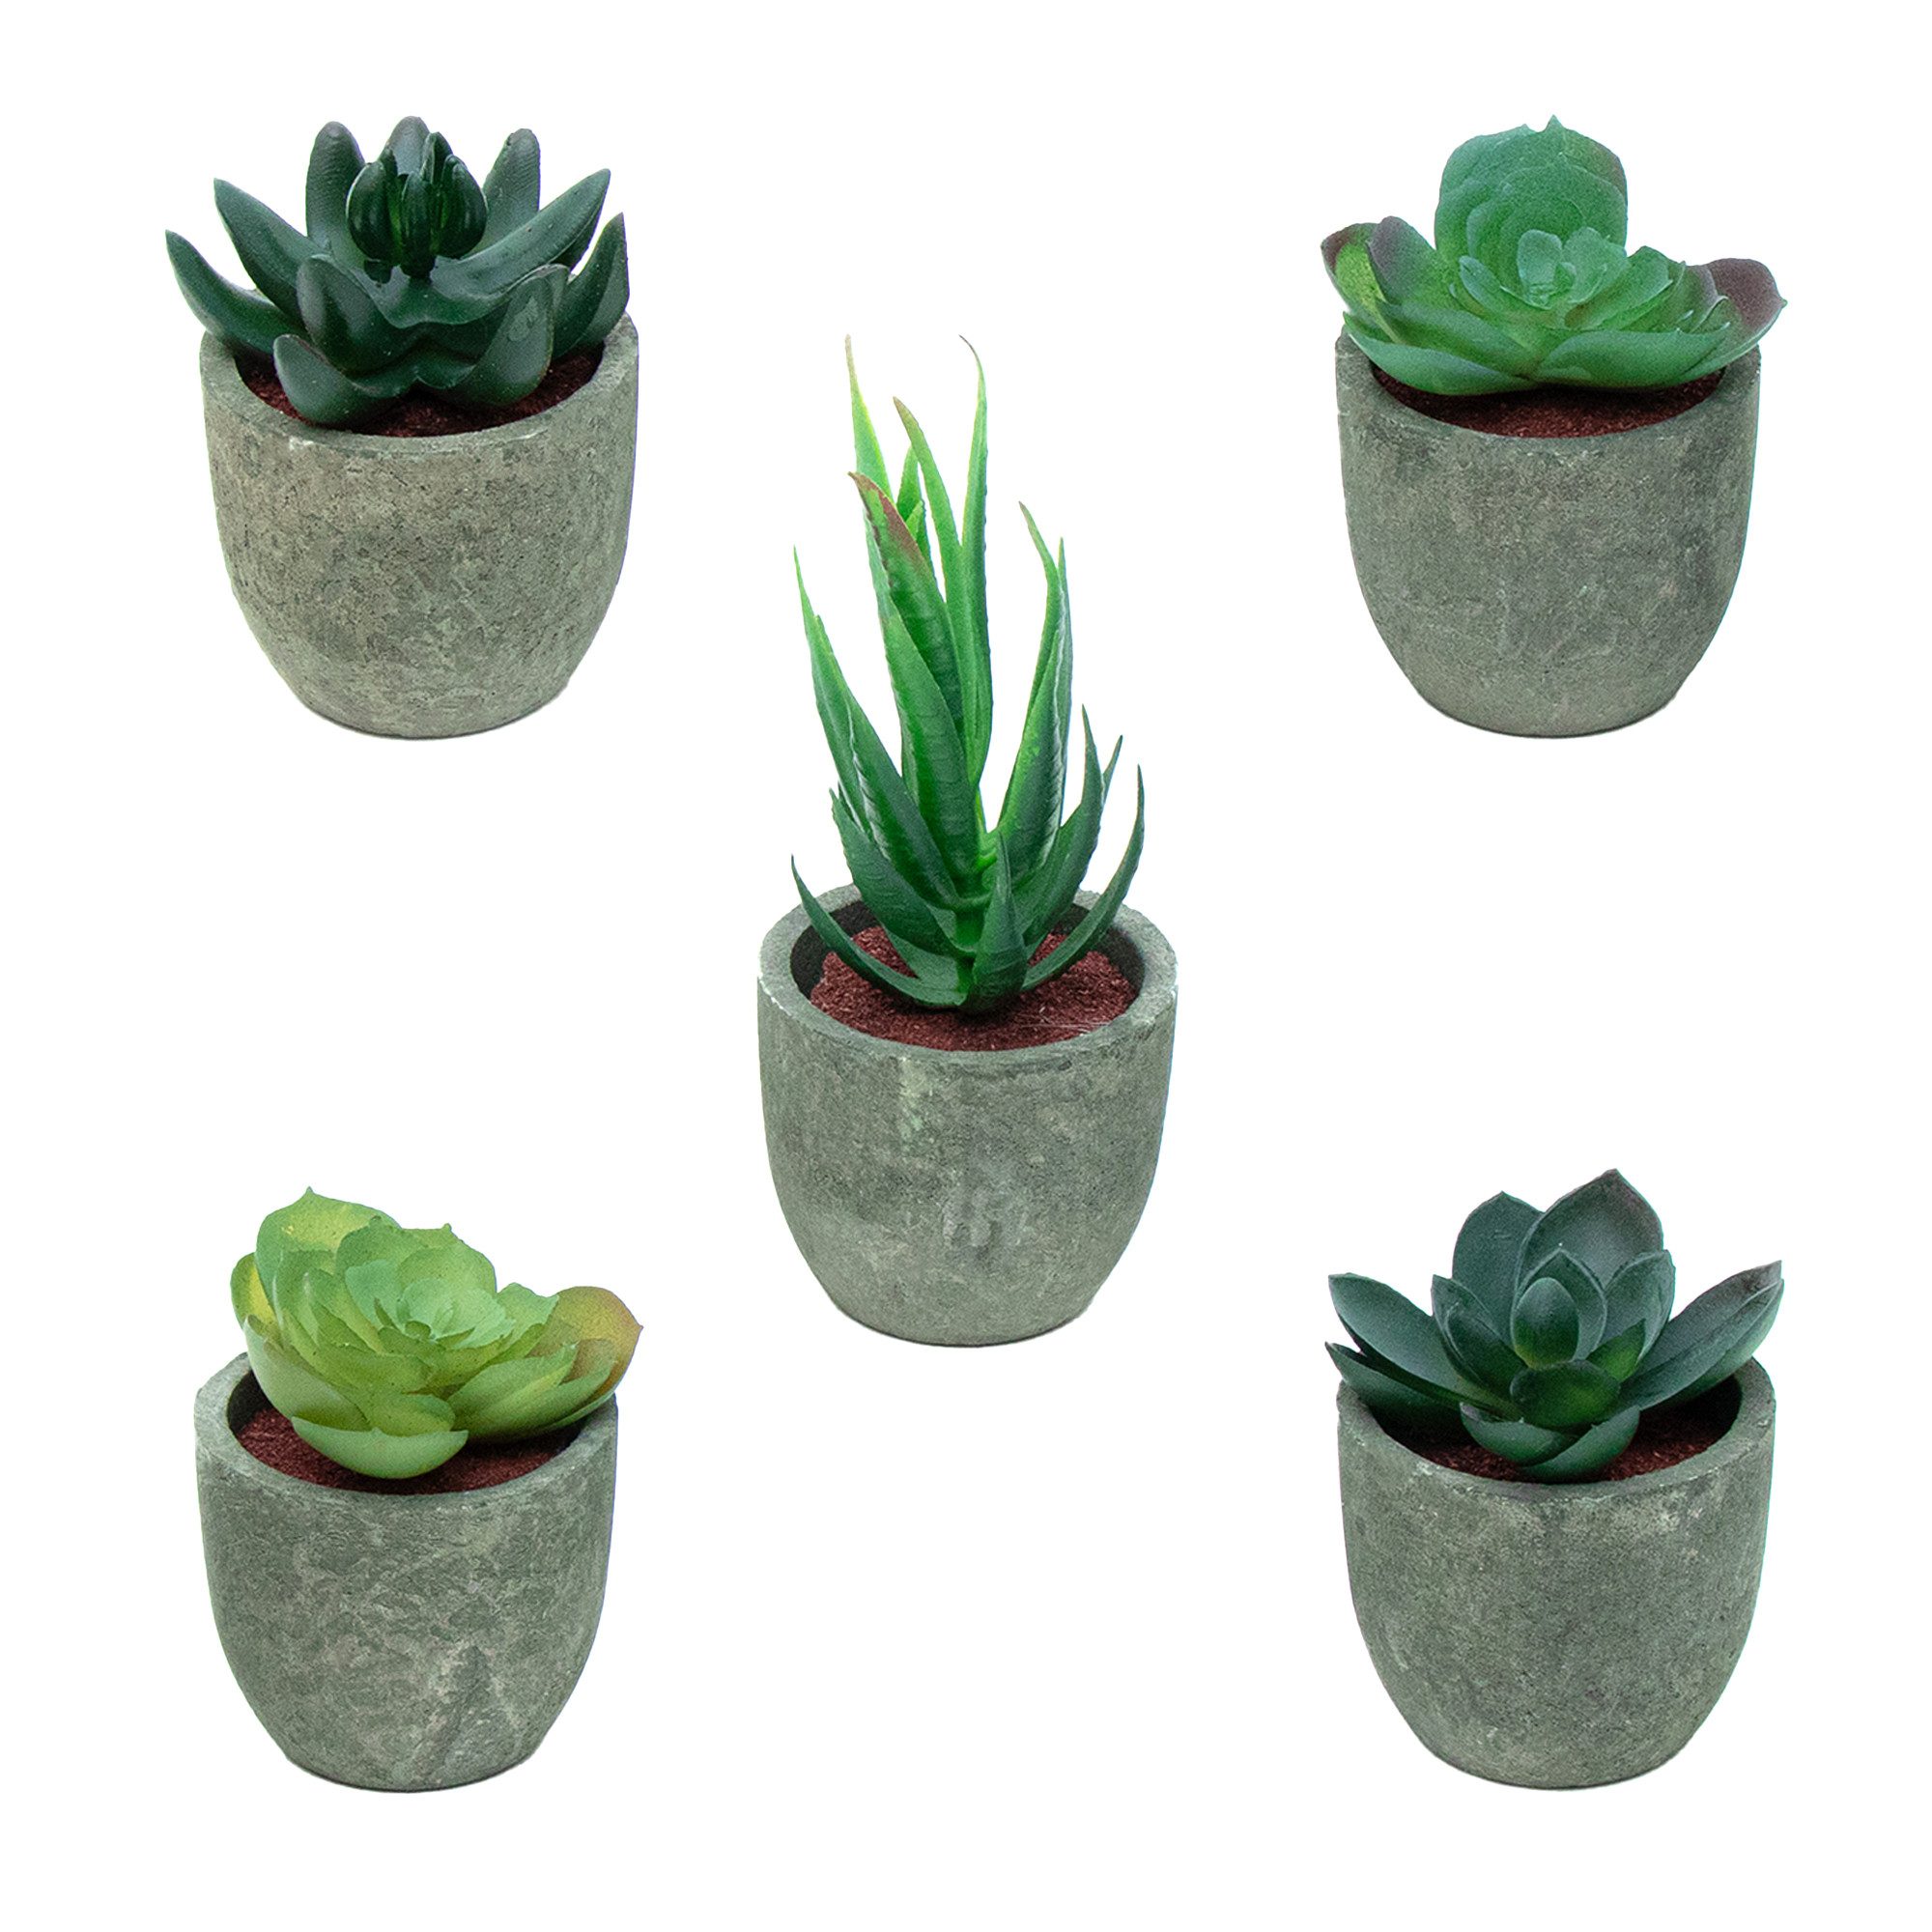 Kunstpflanze, Intirilife, Höhe 15 cm, Kunstpflanzen Set im grauen Topf Topfpflanzen Kunstpflanzen Deko